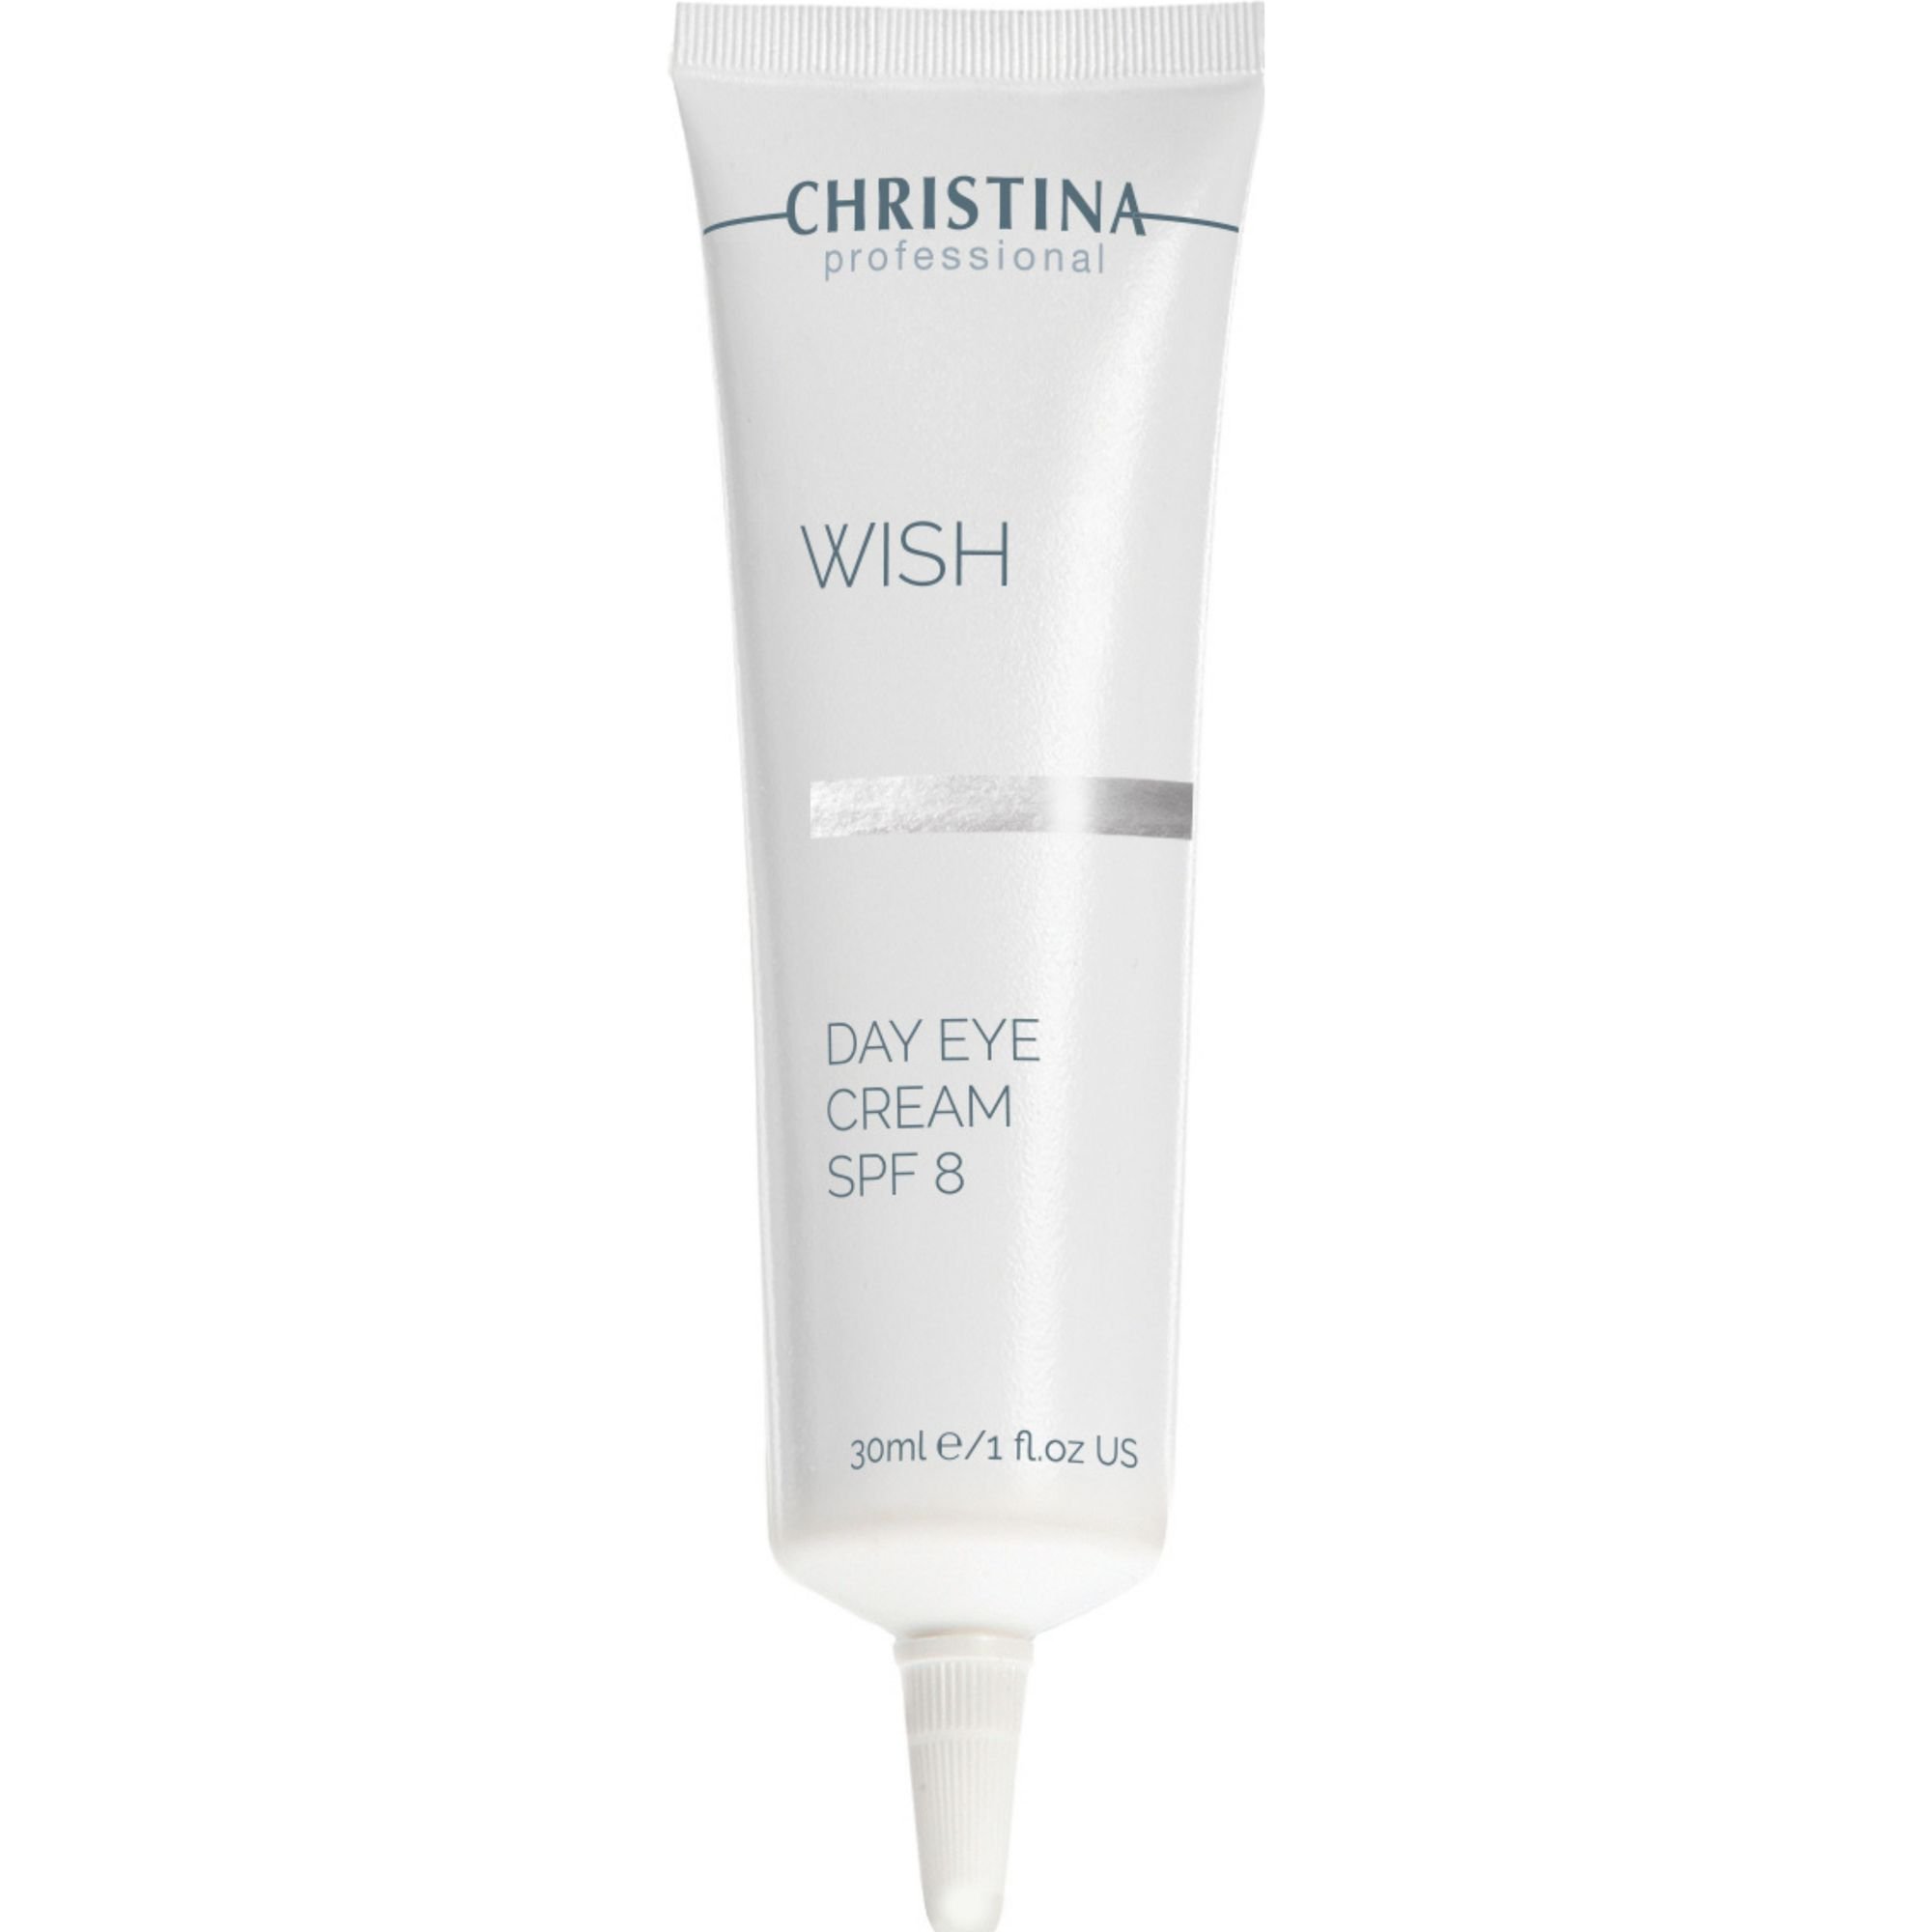 Дневной крем для кожи вокруг глаз Christina Wish Day Eye Cream SPF 8 30 мл - фото 1